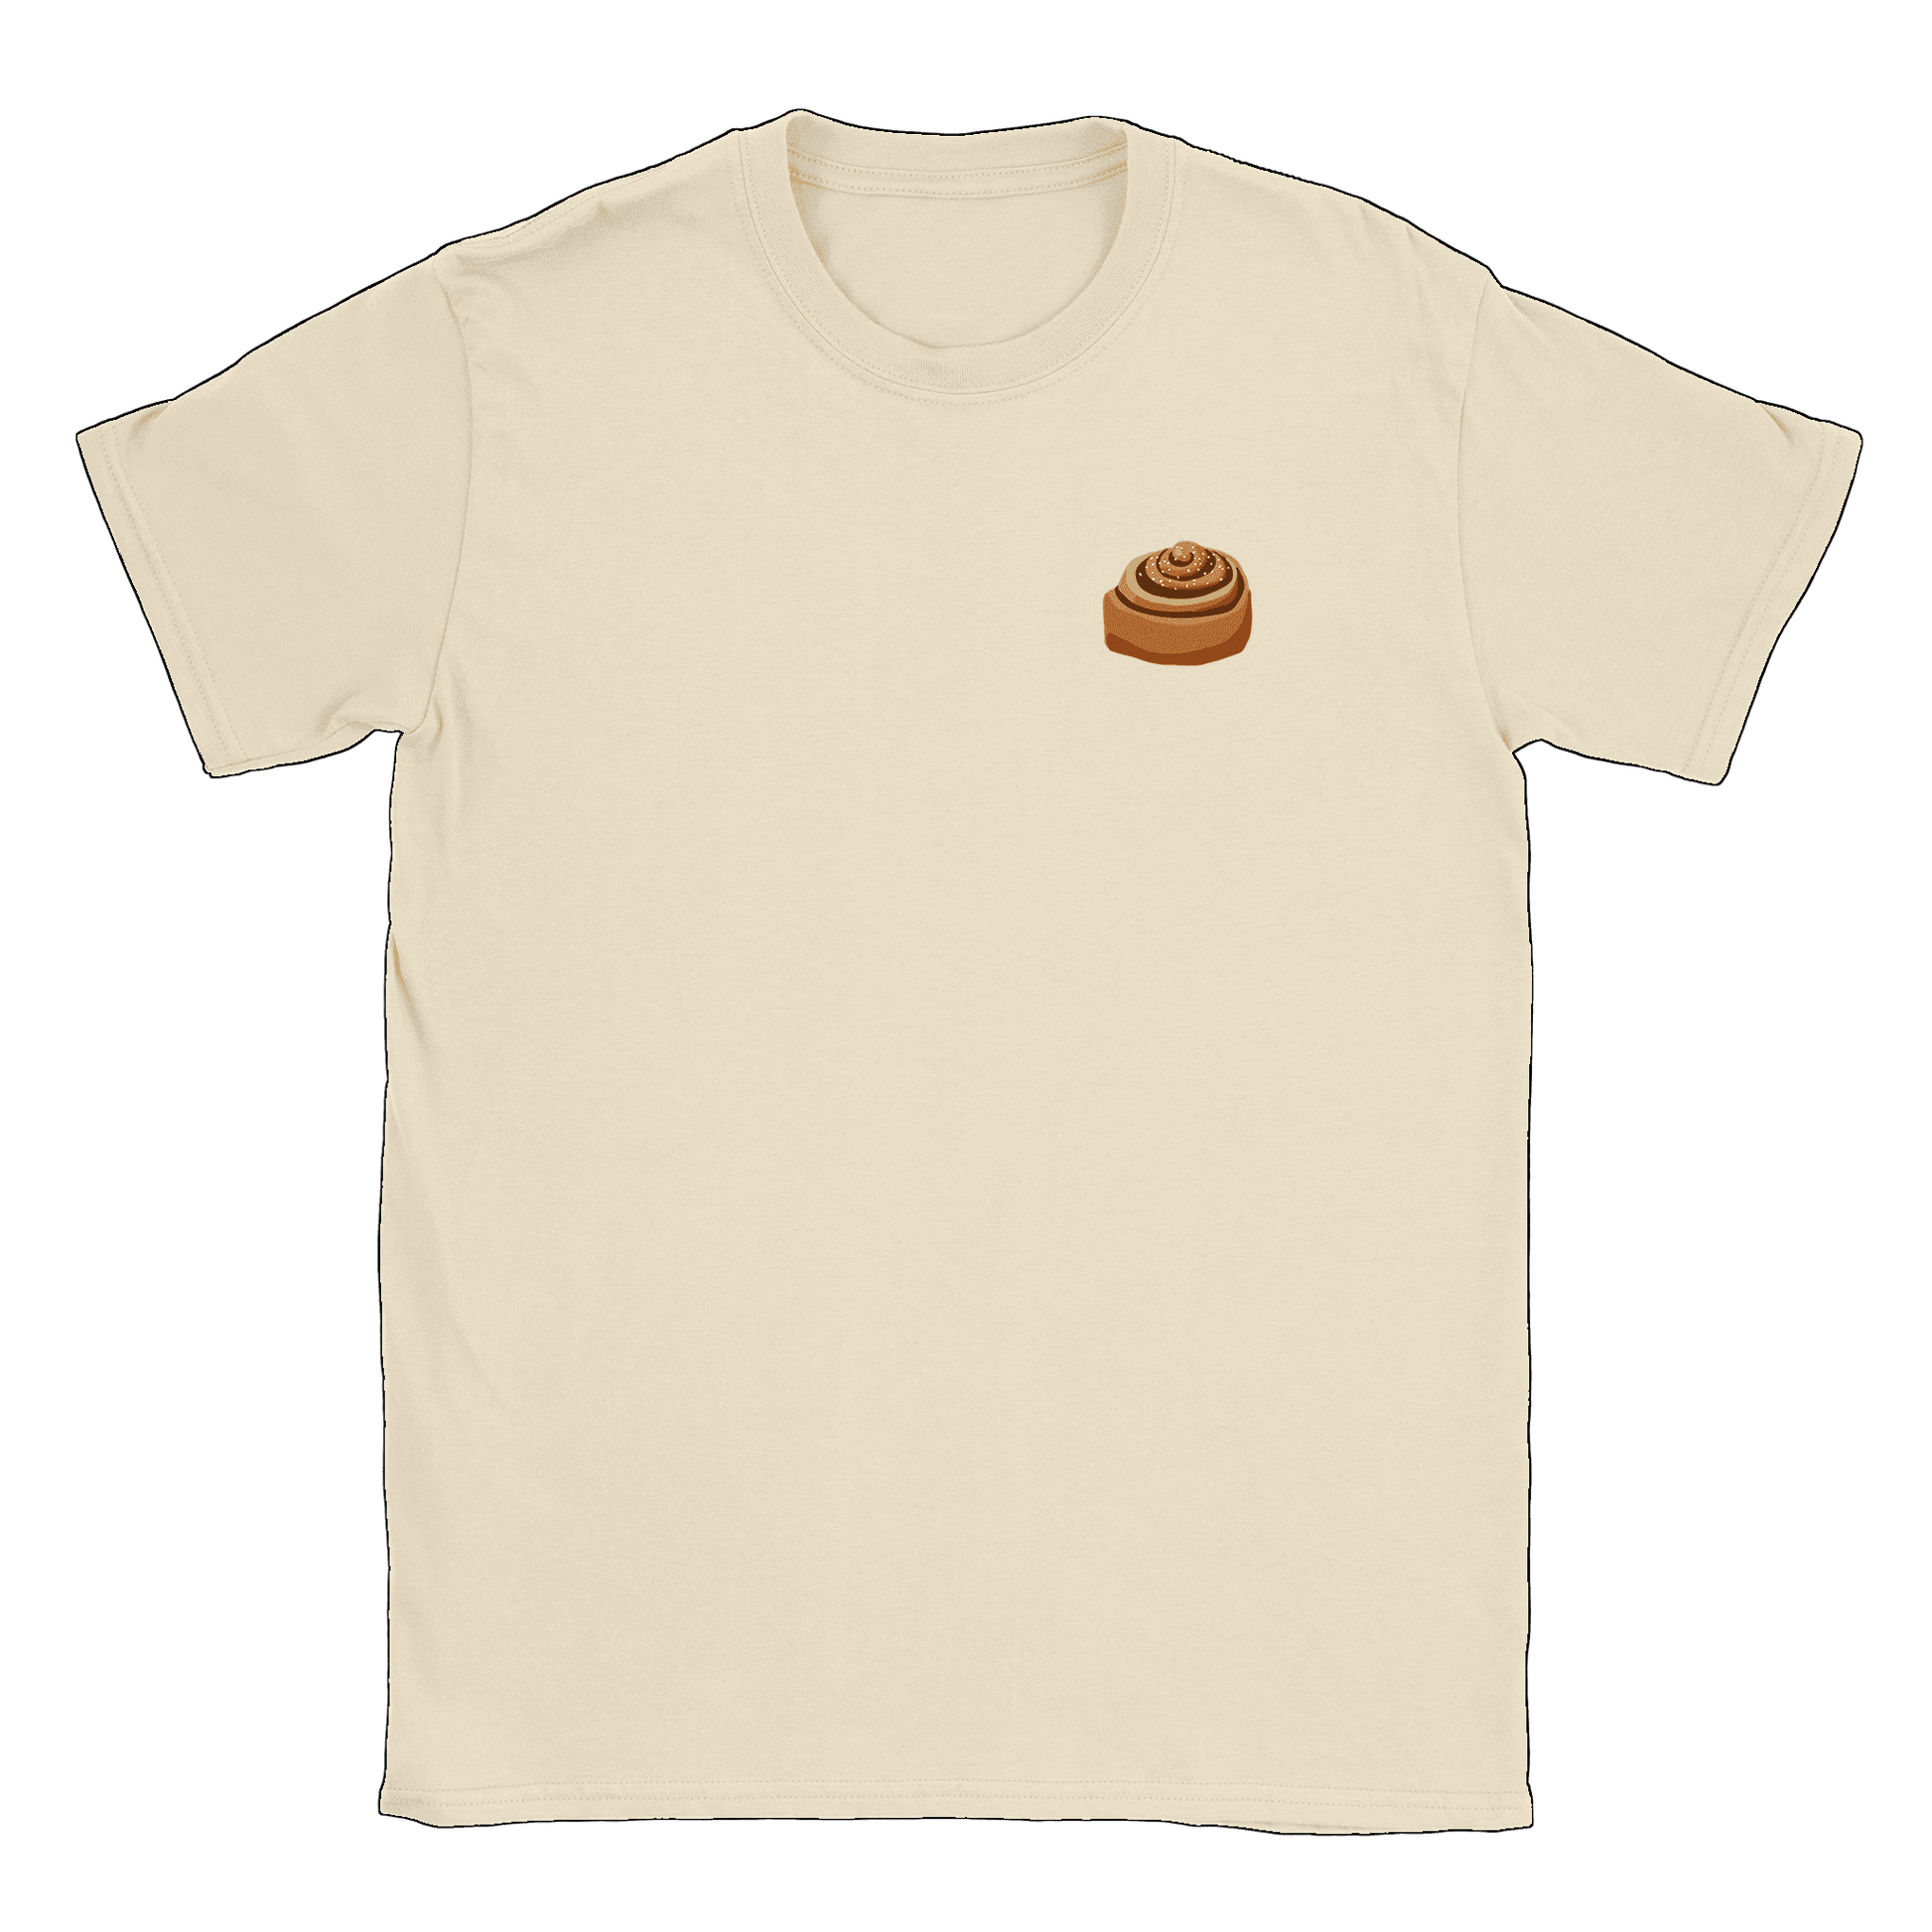 Kanelbulle Liten - T-shirt Natural